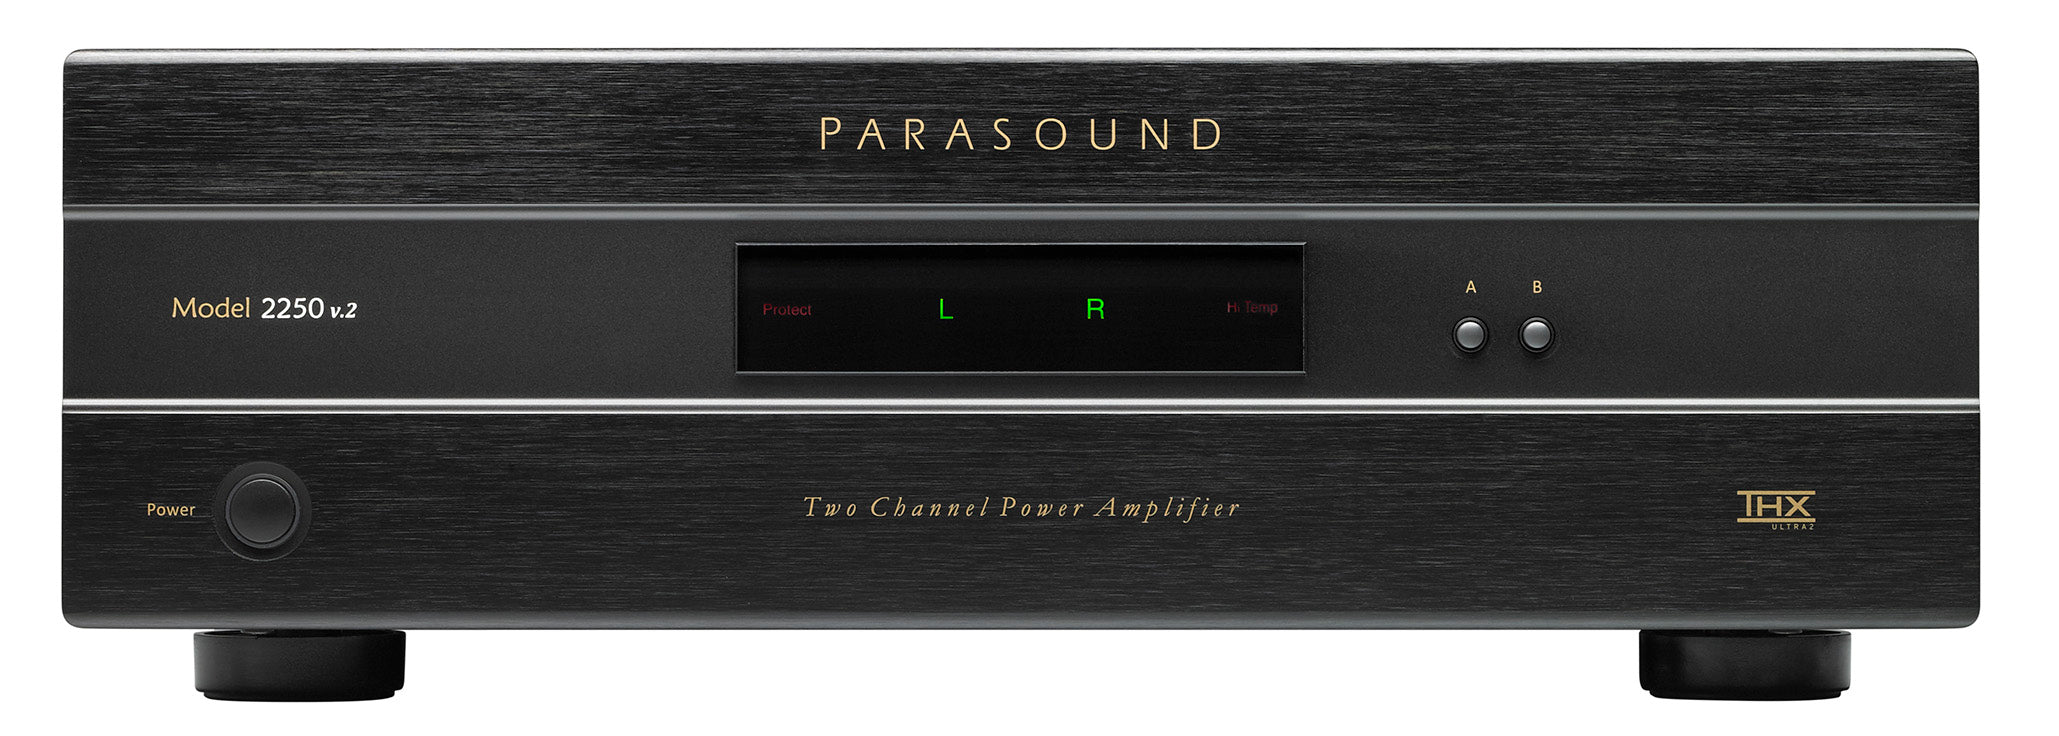 Parasound - 2250 v.2 - Auratech LLC